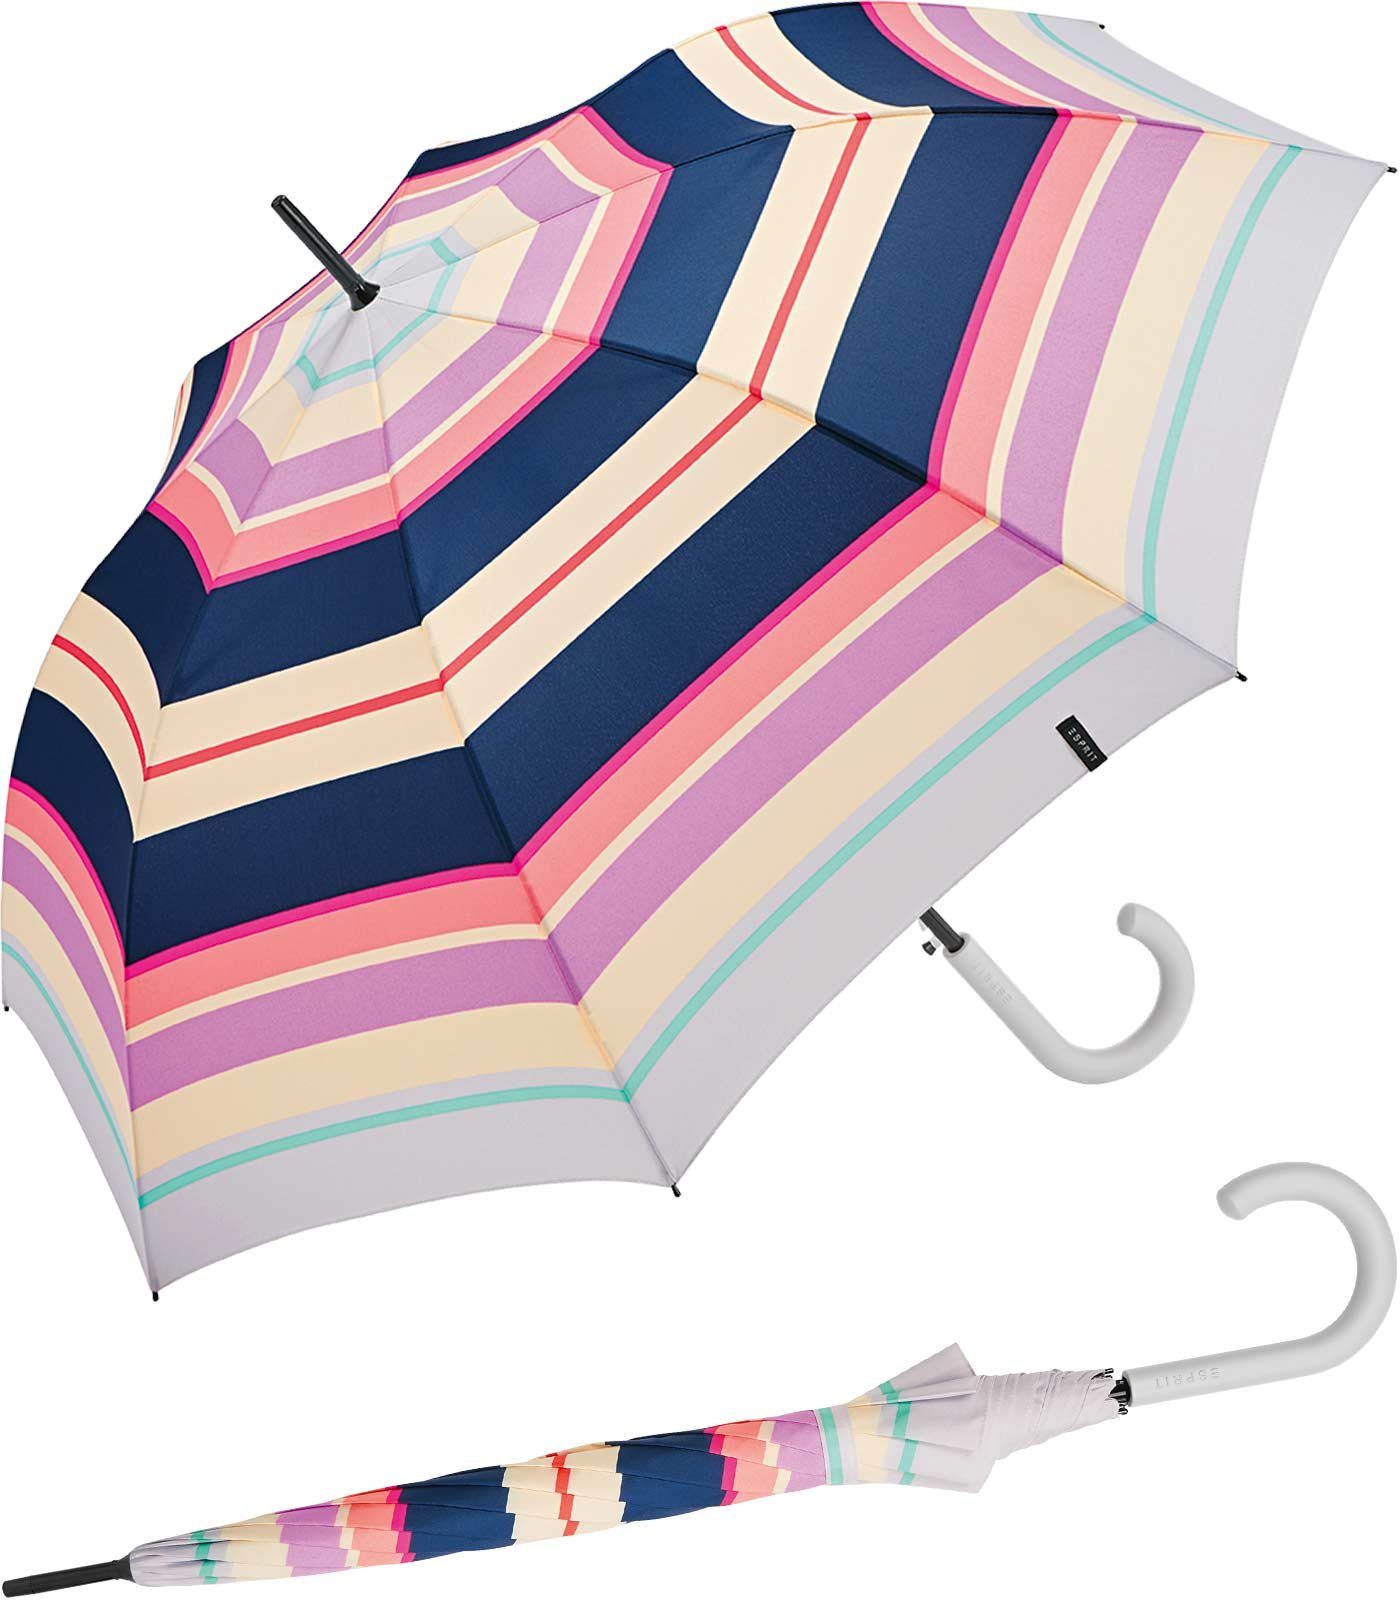 Esprit Langregenschirm Damen-Stockschirm groß und stabil mit Automatik, farbenfroh bedruckt mit Streifen-Muster